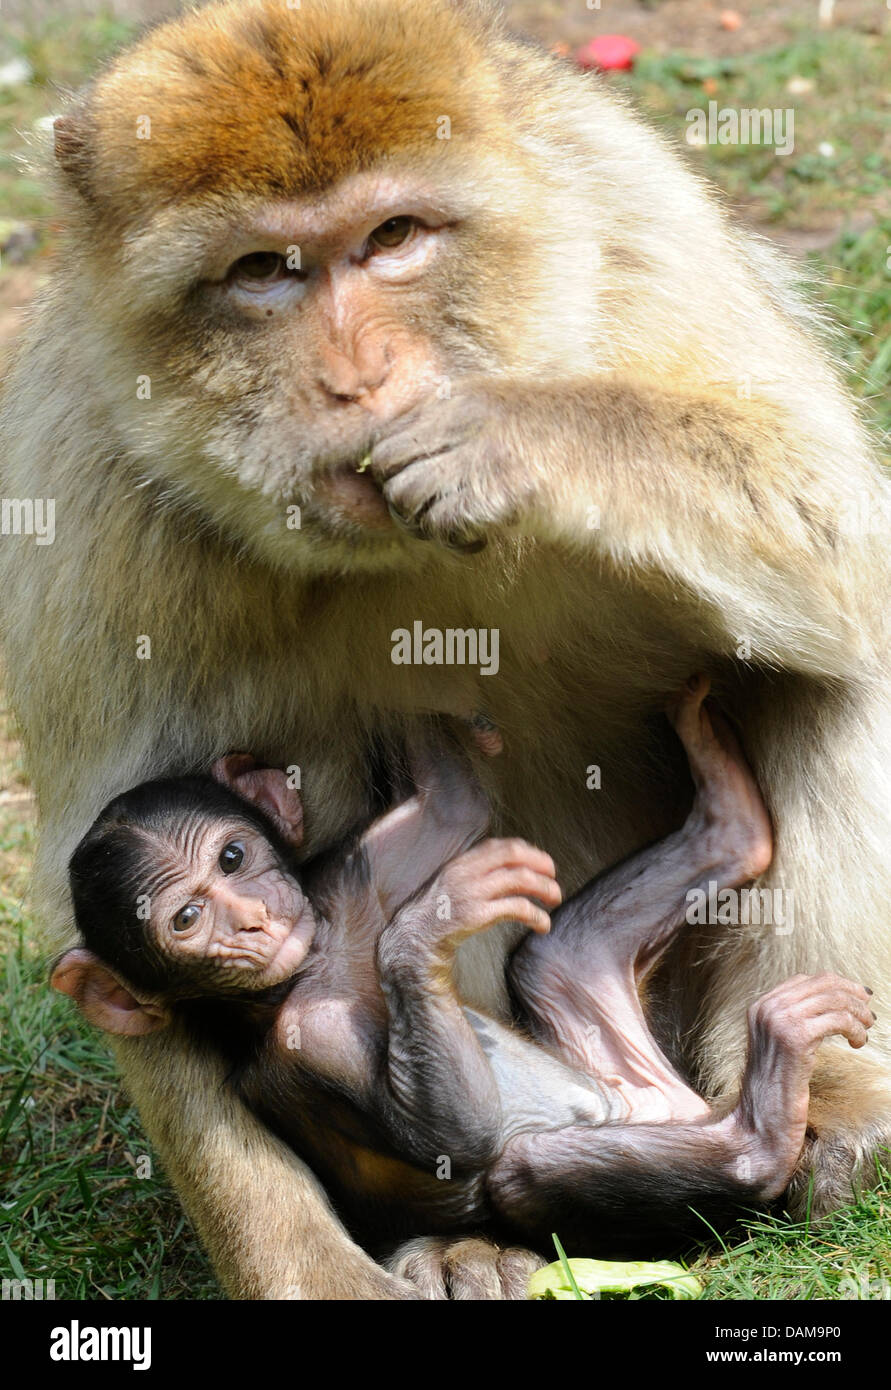 A due settimane di Barberia ape baby stabilisce nelle braccia di sua madre a Serengeti-Park Hodenhagen in Germania, 31 maggio 2011. Circa 1.500 animali da 96 specie vivono in 200 ettari di parco. Foto: Holger Hollemann Foto Stock